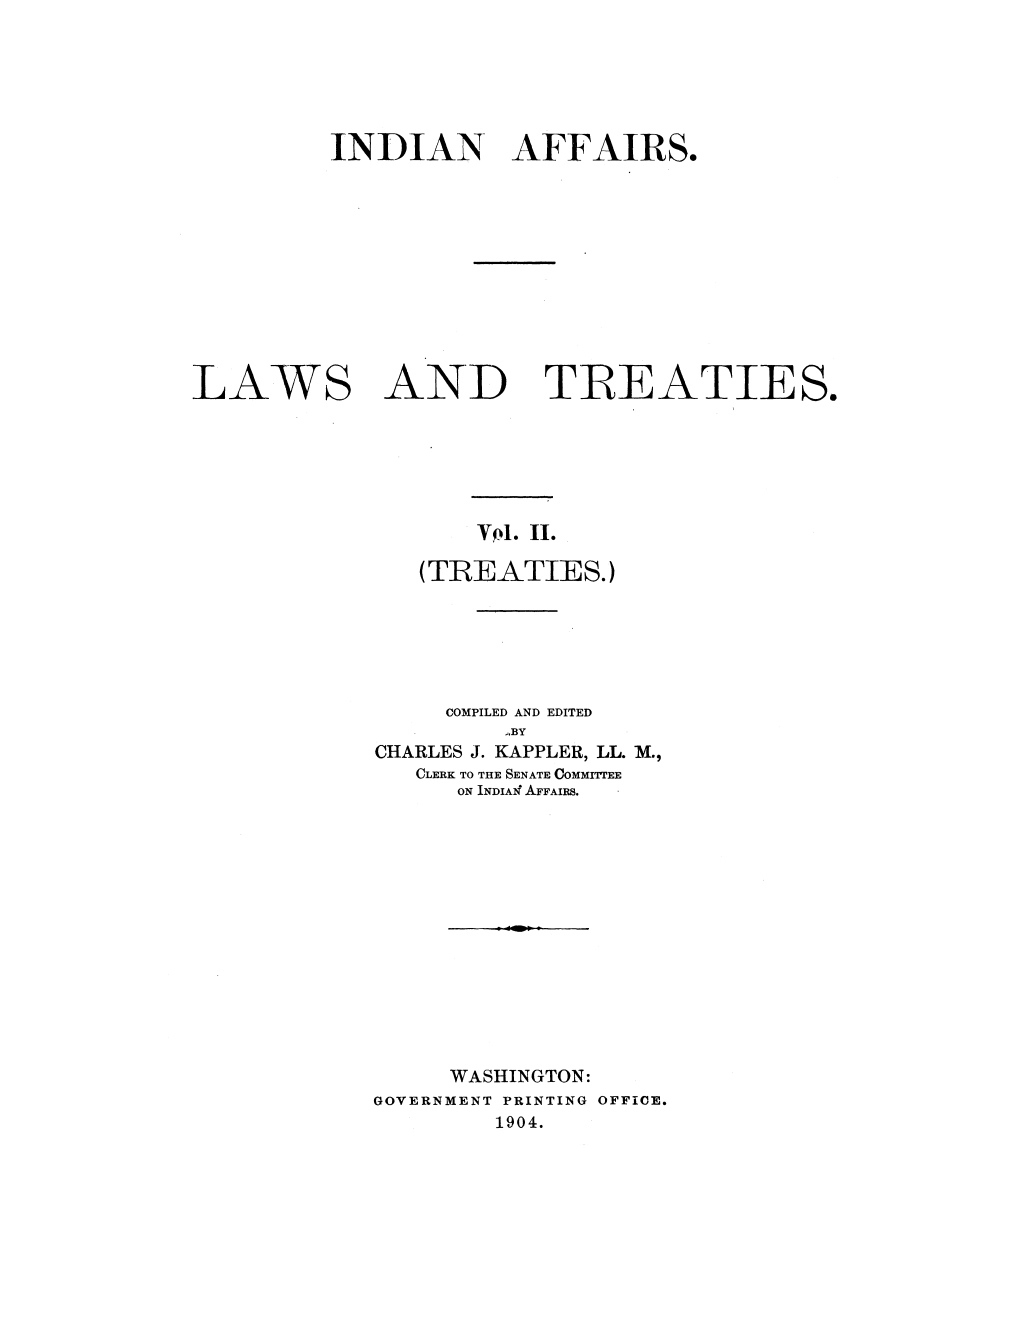 Laws An-D Treaties